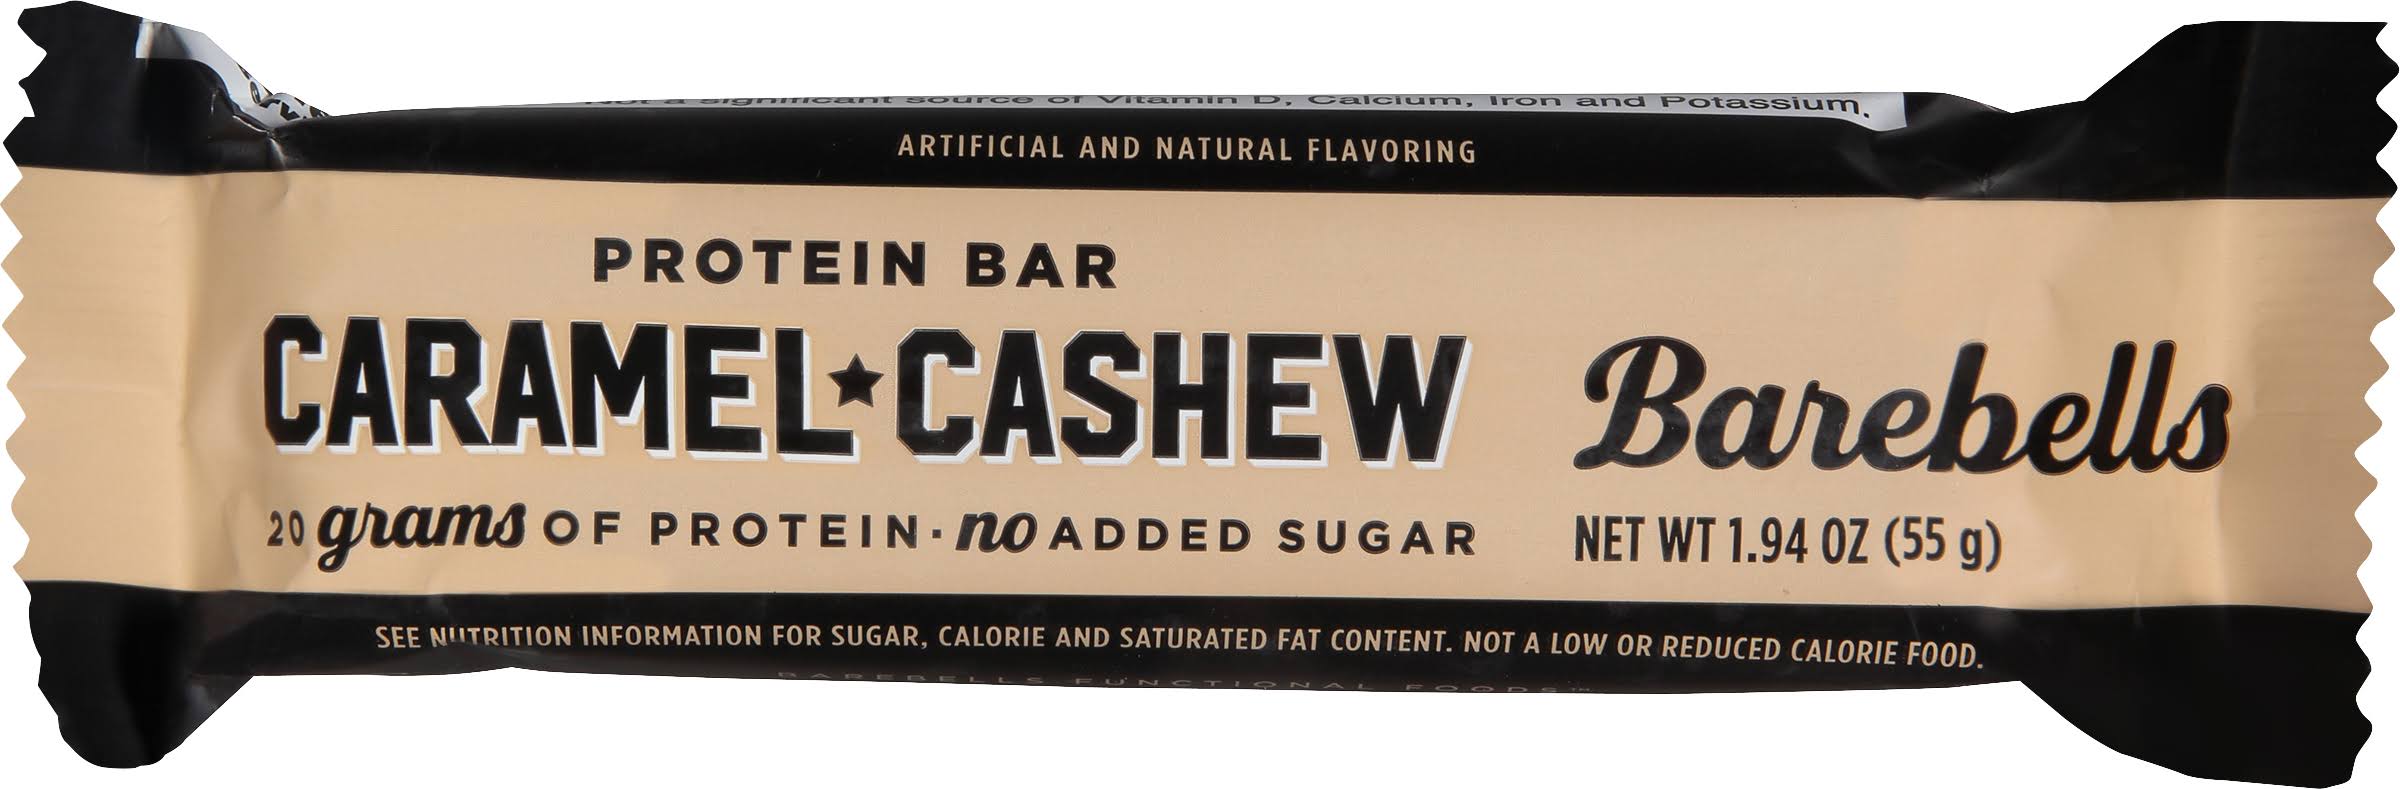 Barebells - High Protein No Sugar Added Bar - 55g, Caramel Cashew